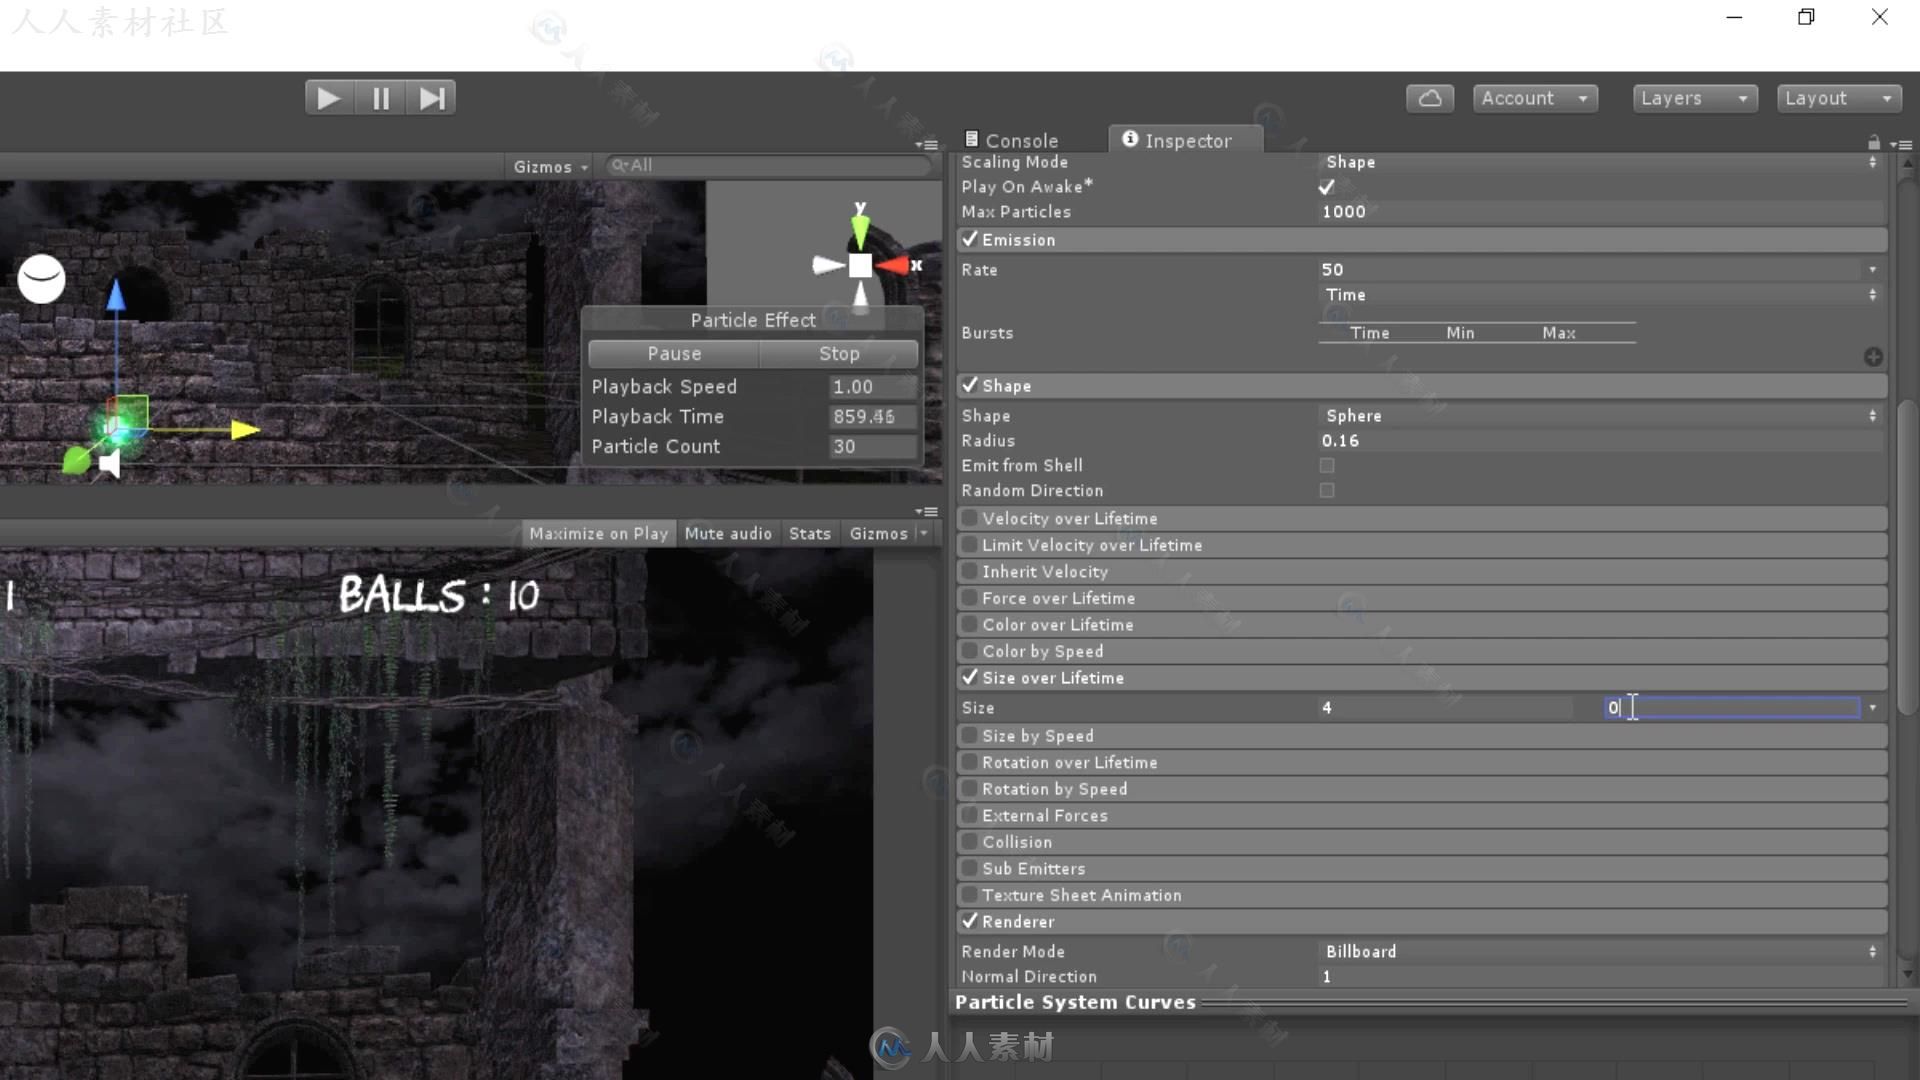 Unity 5商业游戏项目实例制作视频教程第三季